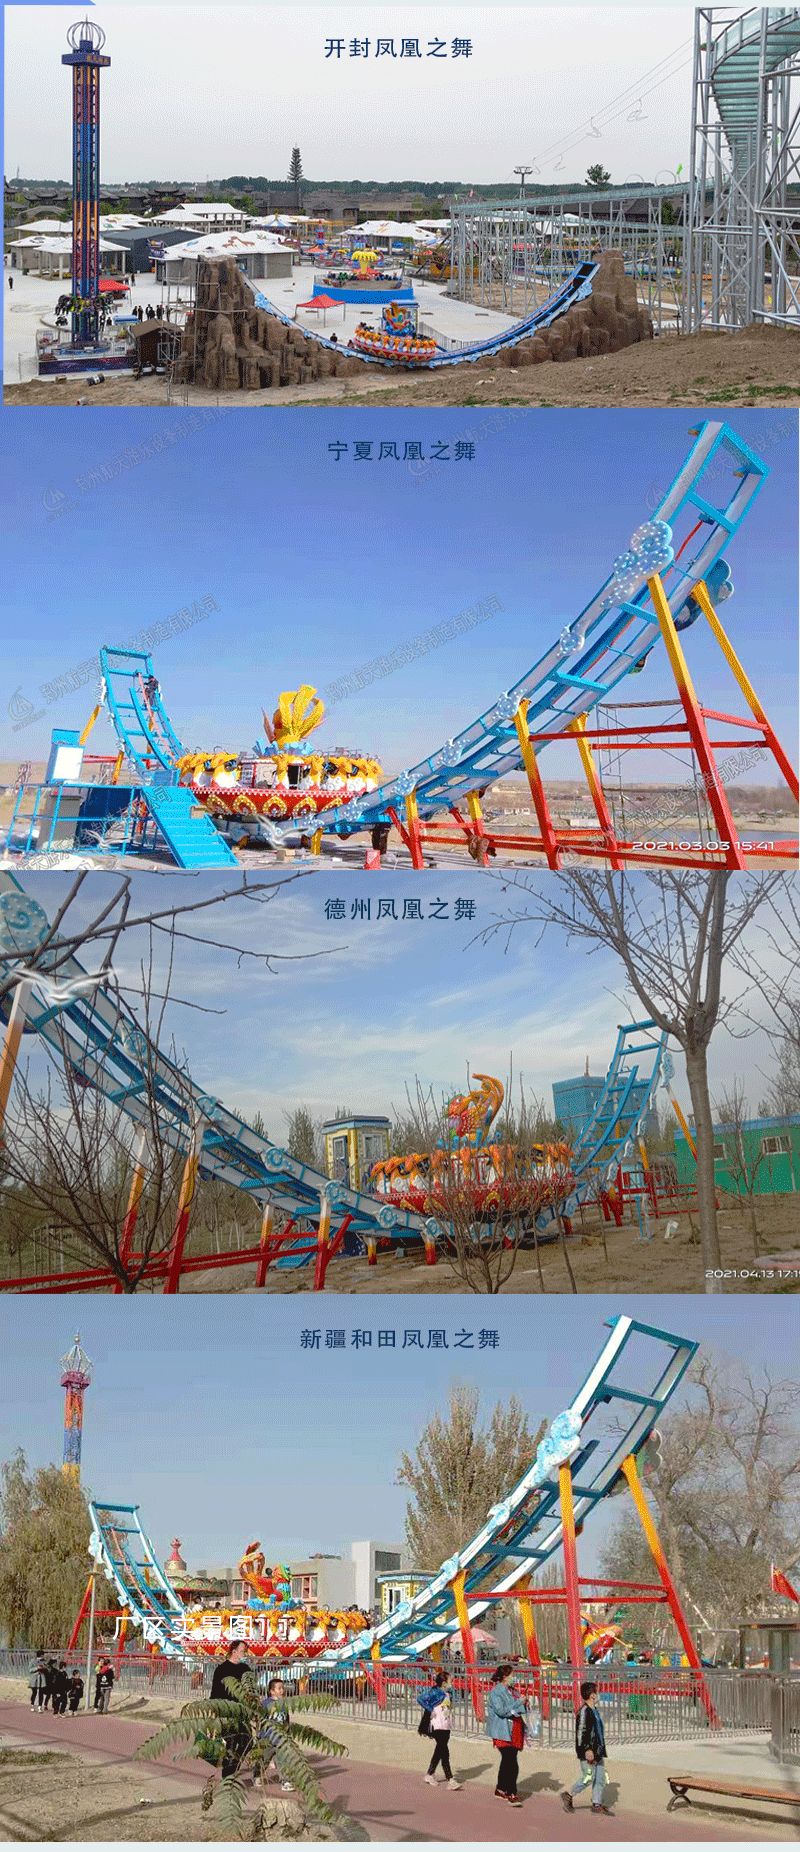 郑州新型大型轨道飞碟游乐园设备航天游乐厂家 4